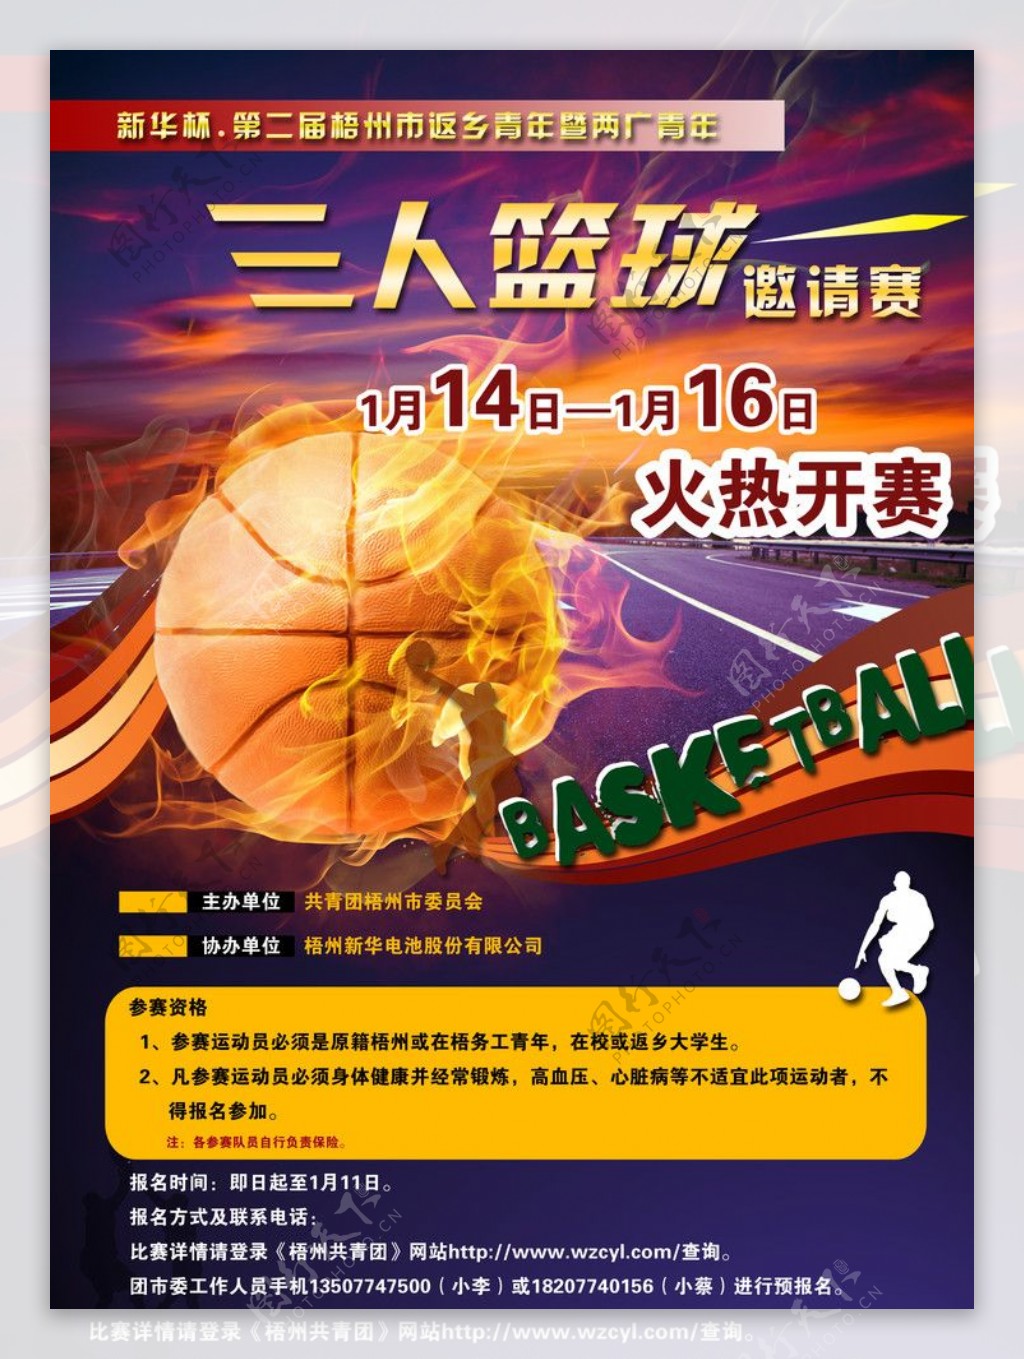 三人篮球赛宣传海报图片